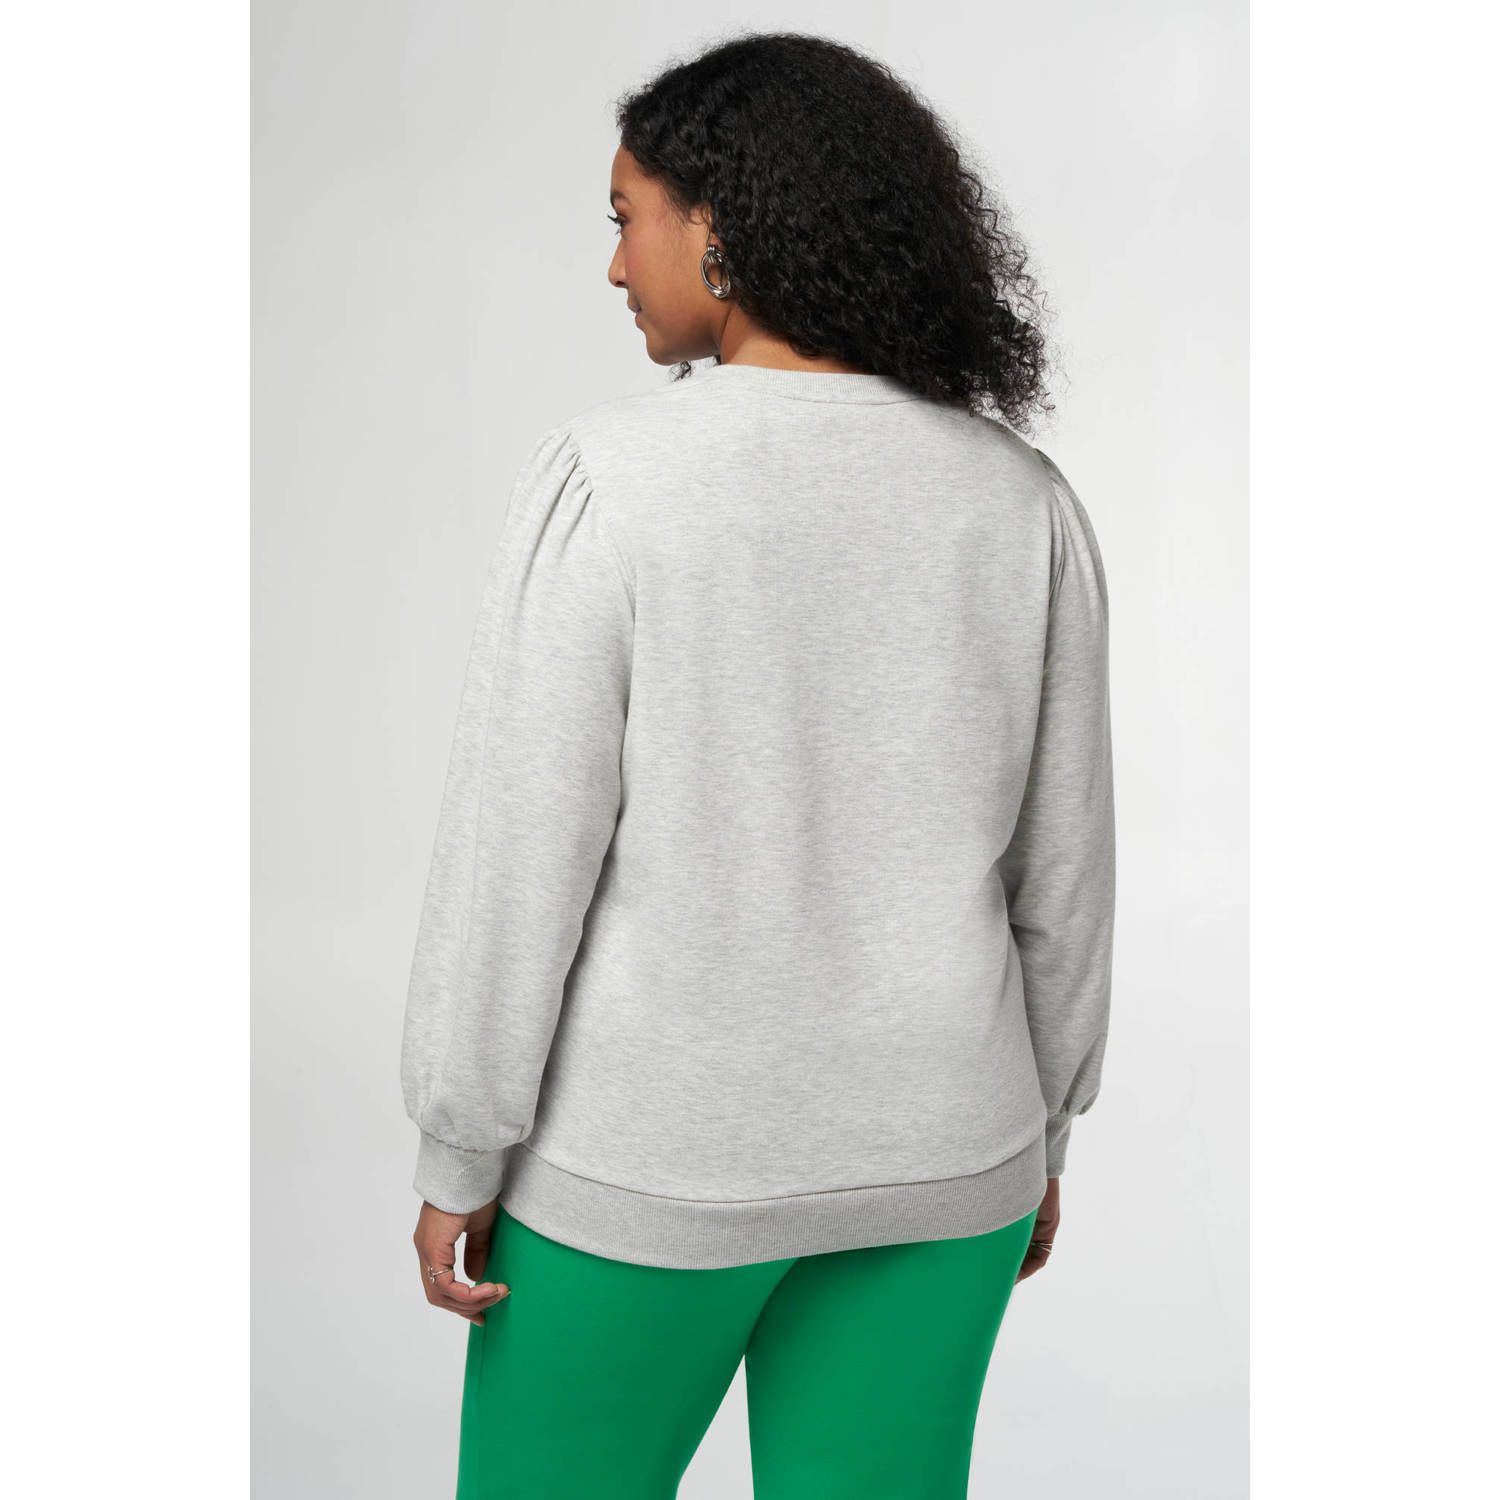 MS Mode sweater met printopdruk grijs